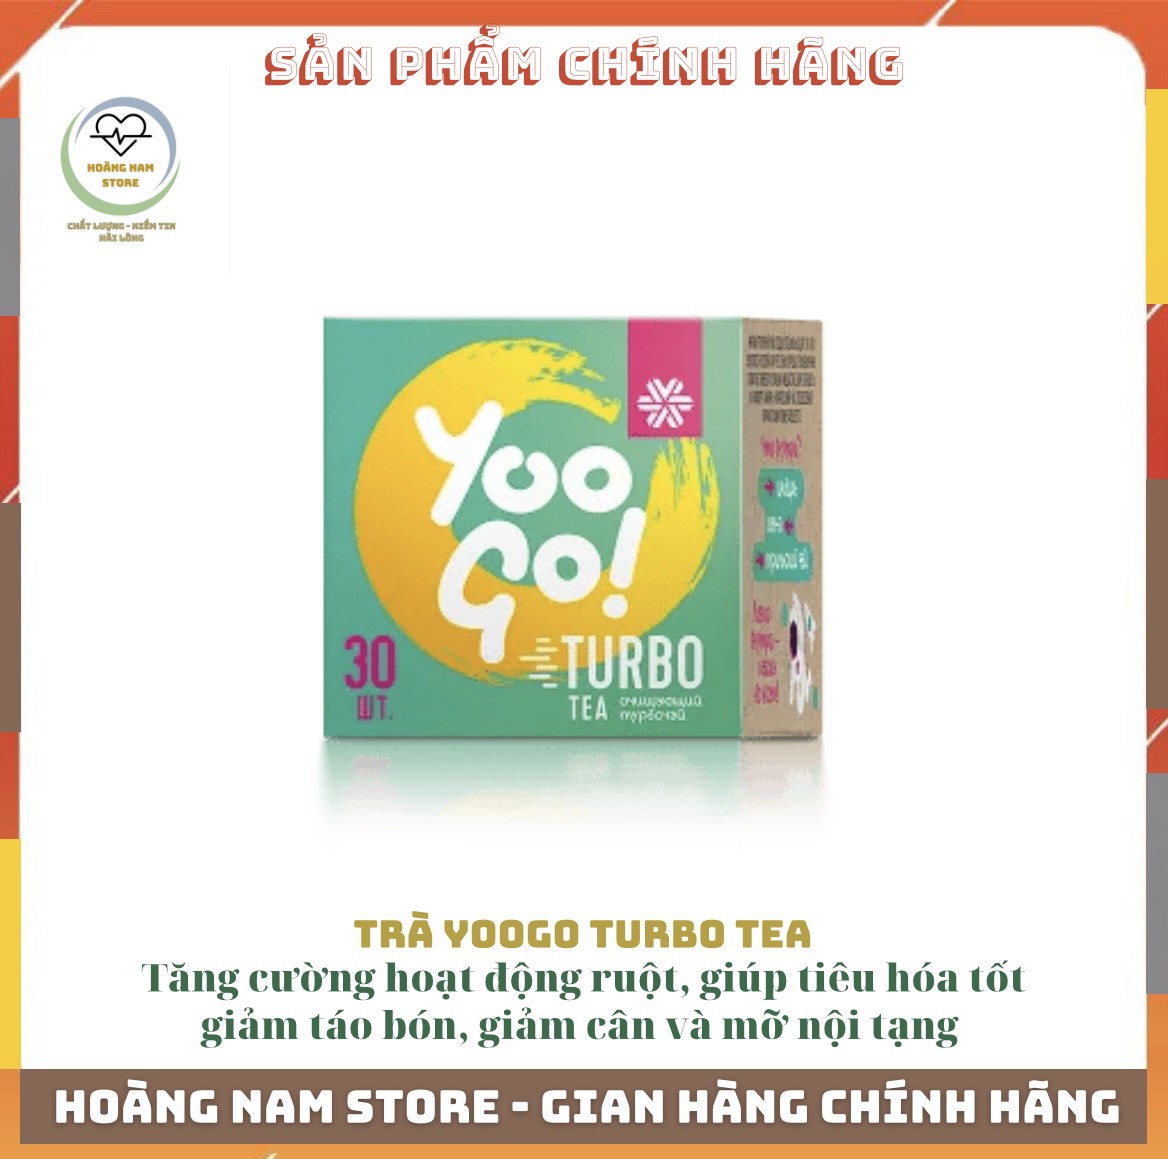 Trà thảo mộc siberian YooGo Turbo Tea, Hỗ trợ giúp giảm cân hiệu quả, an toàn, giúp cải thiện hệ tiêu hóa khỏe mạnh, Hộp 30 gói